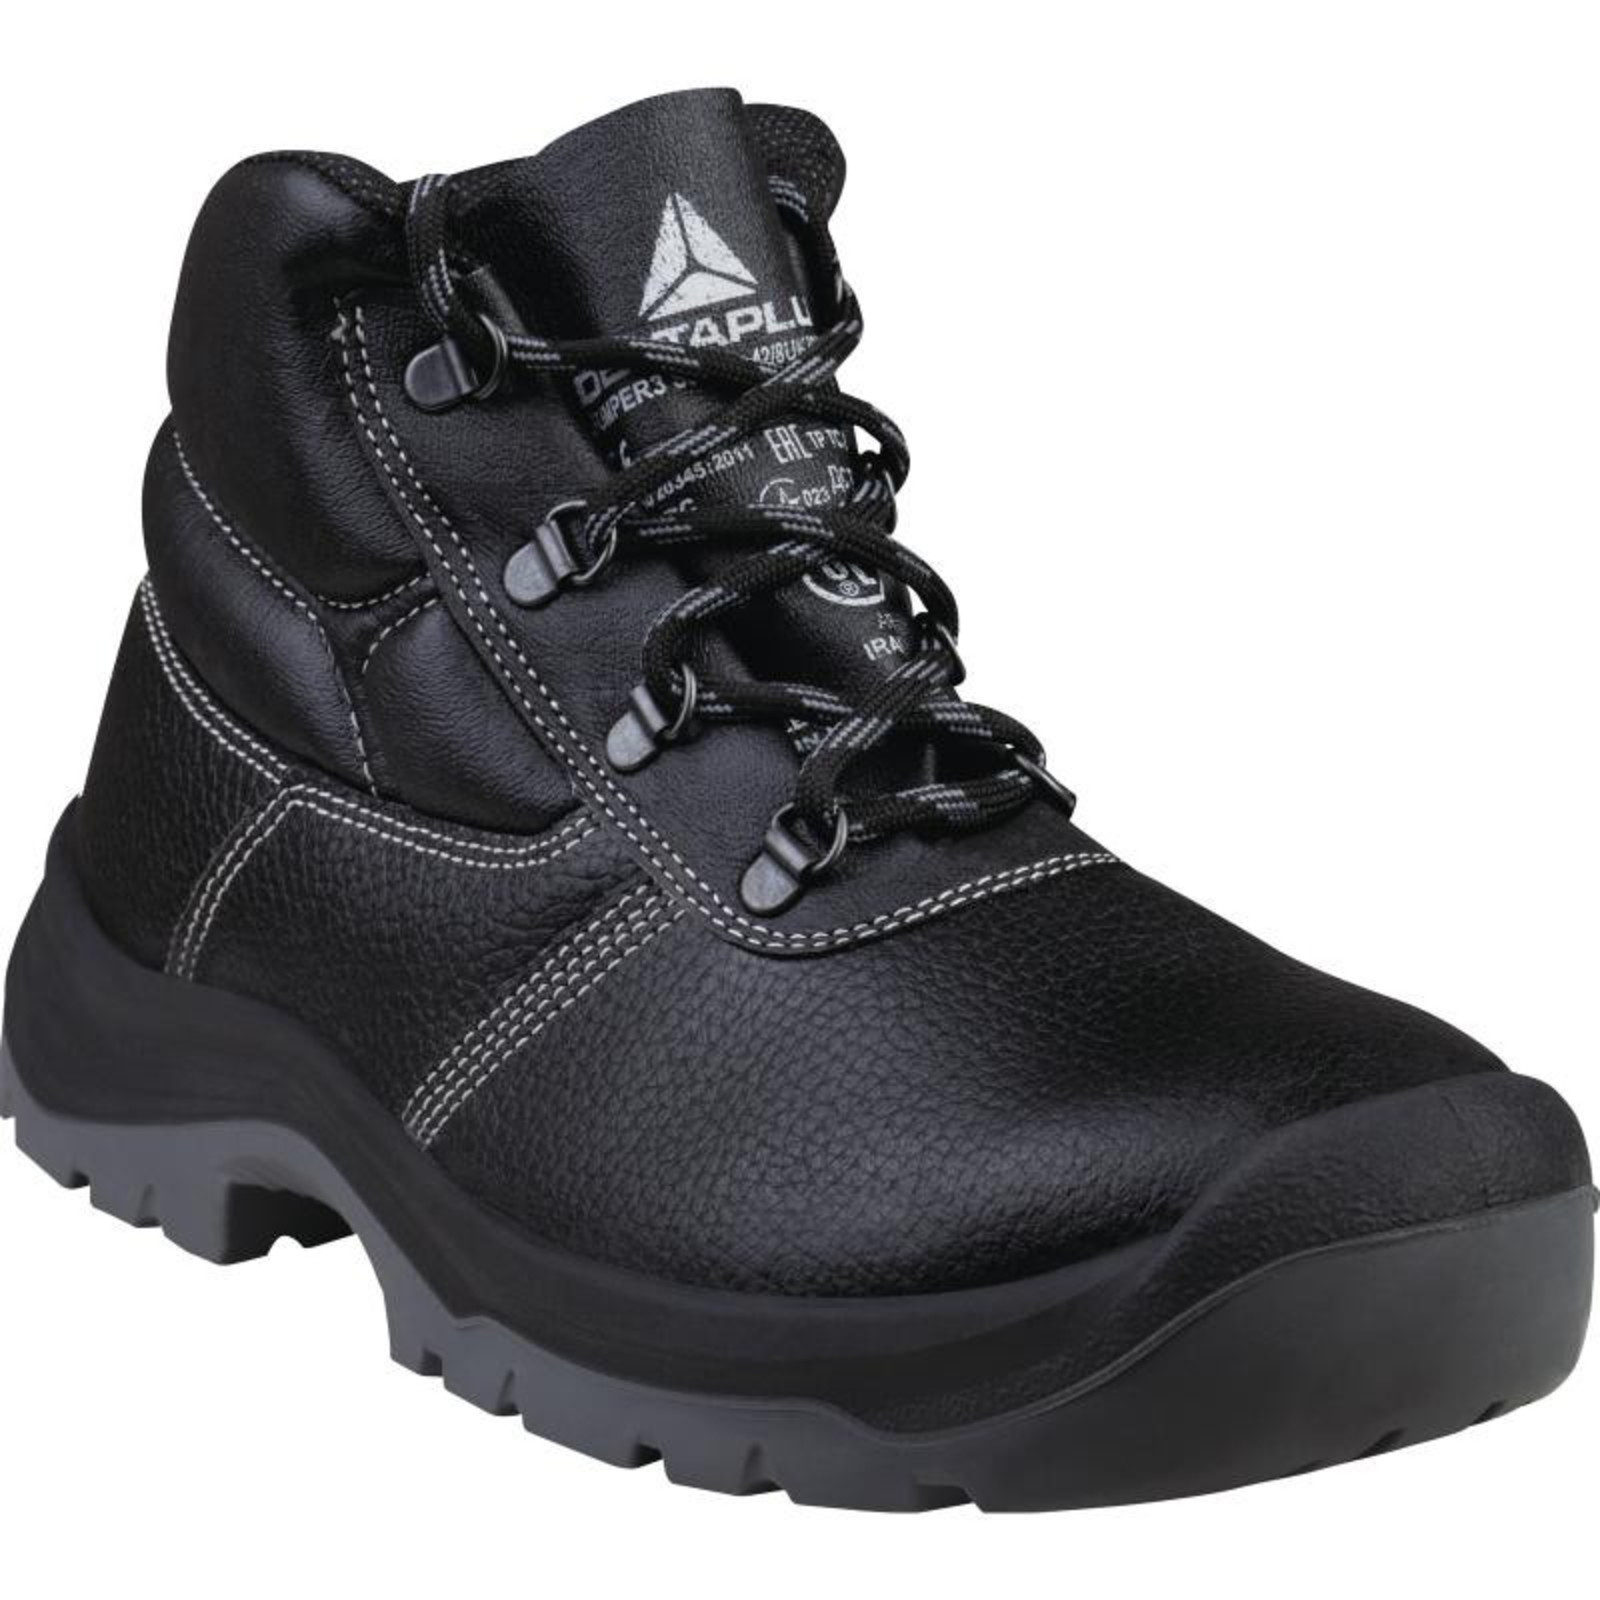 Členková bezpečnostná obuv Delta Plus Jumper3 S3 SRC - veľkosť: 43, farba: čierna